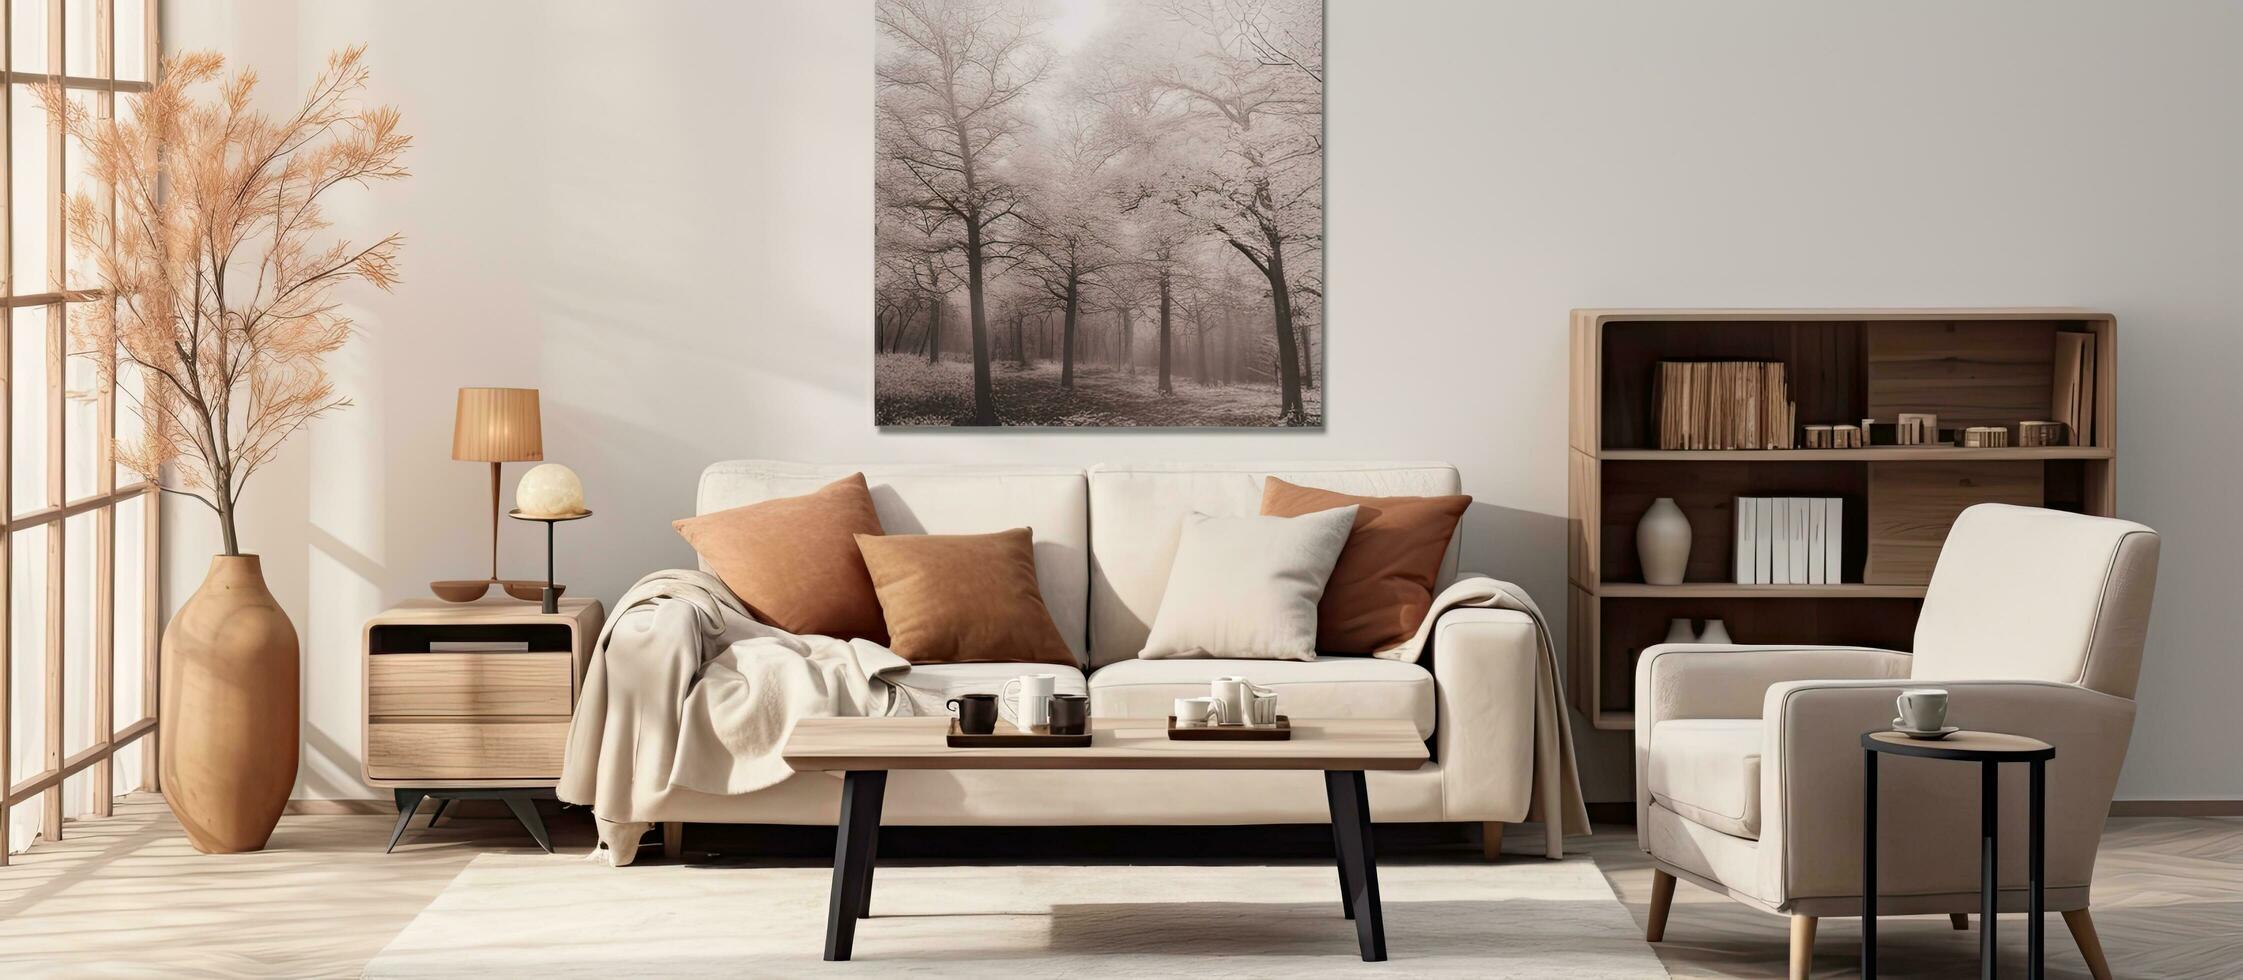 knus leven kamer met poster kader koffie tafel sofa fauteuil rek magnolia vaas plaid en persoonlijk accessoires huis decor foto